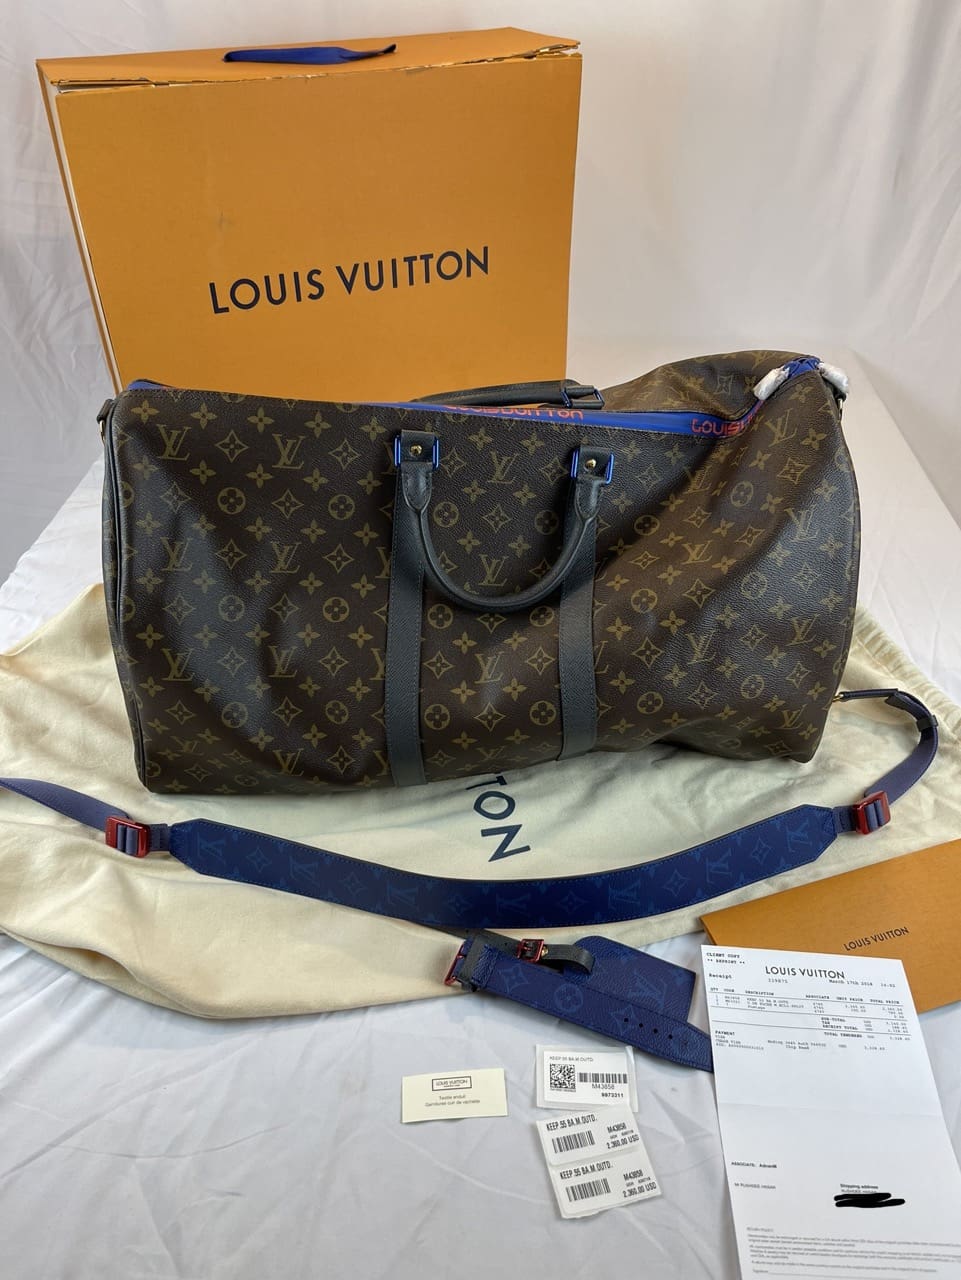 LOUIS VUITTON Size L BAG 55